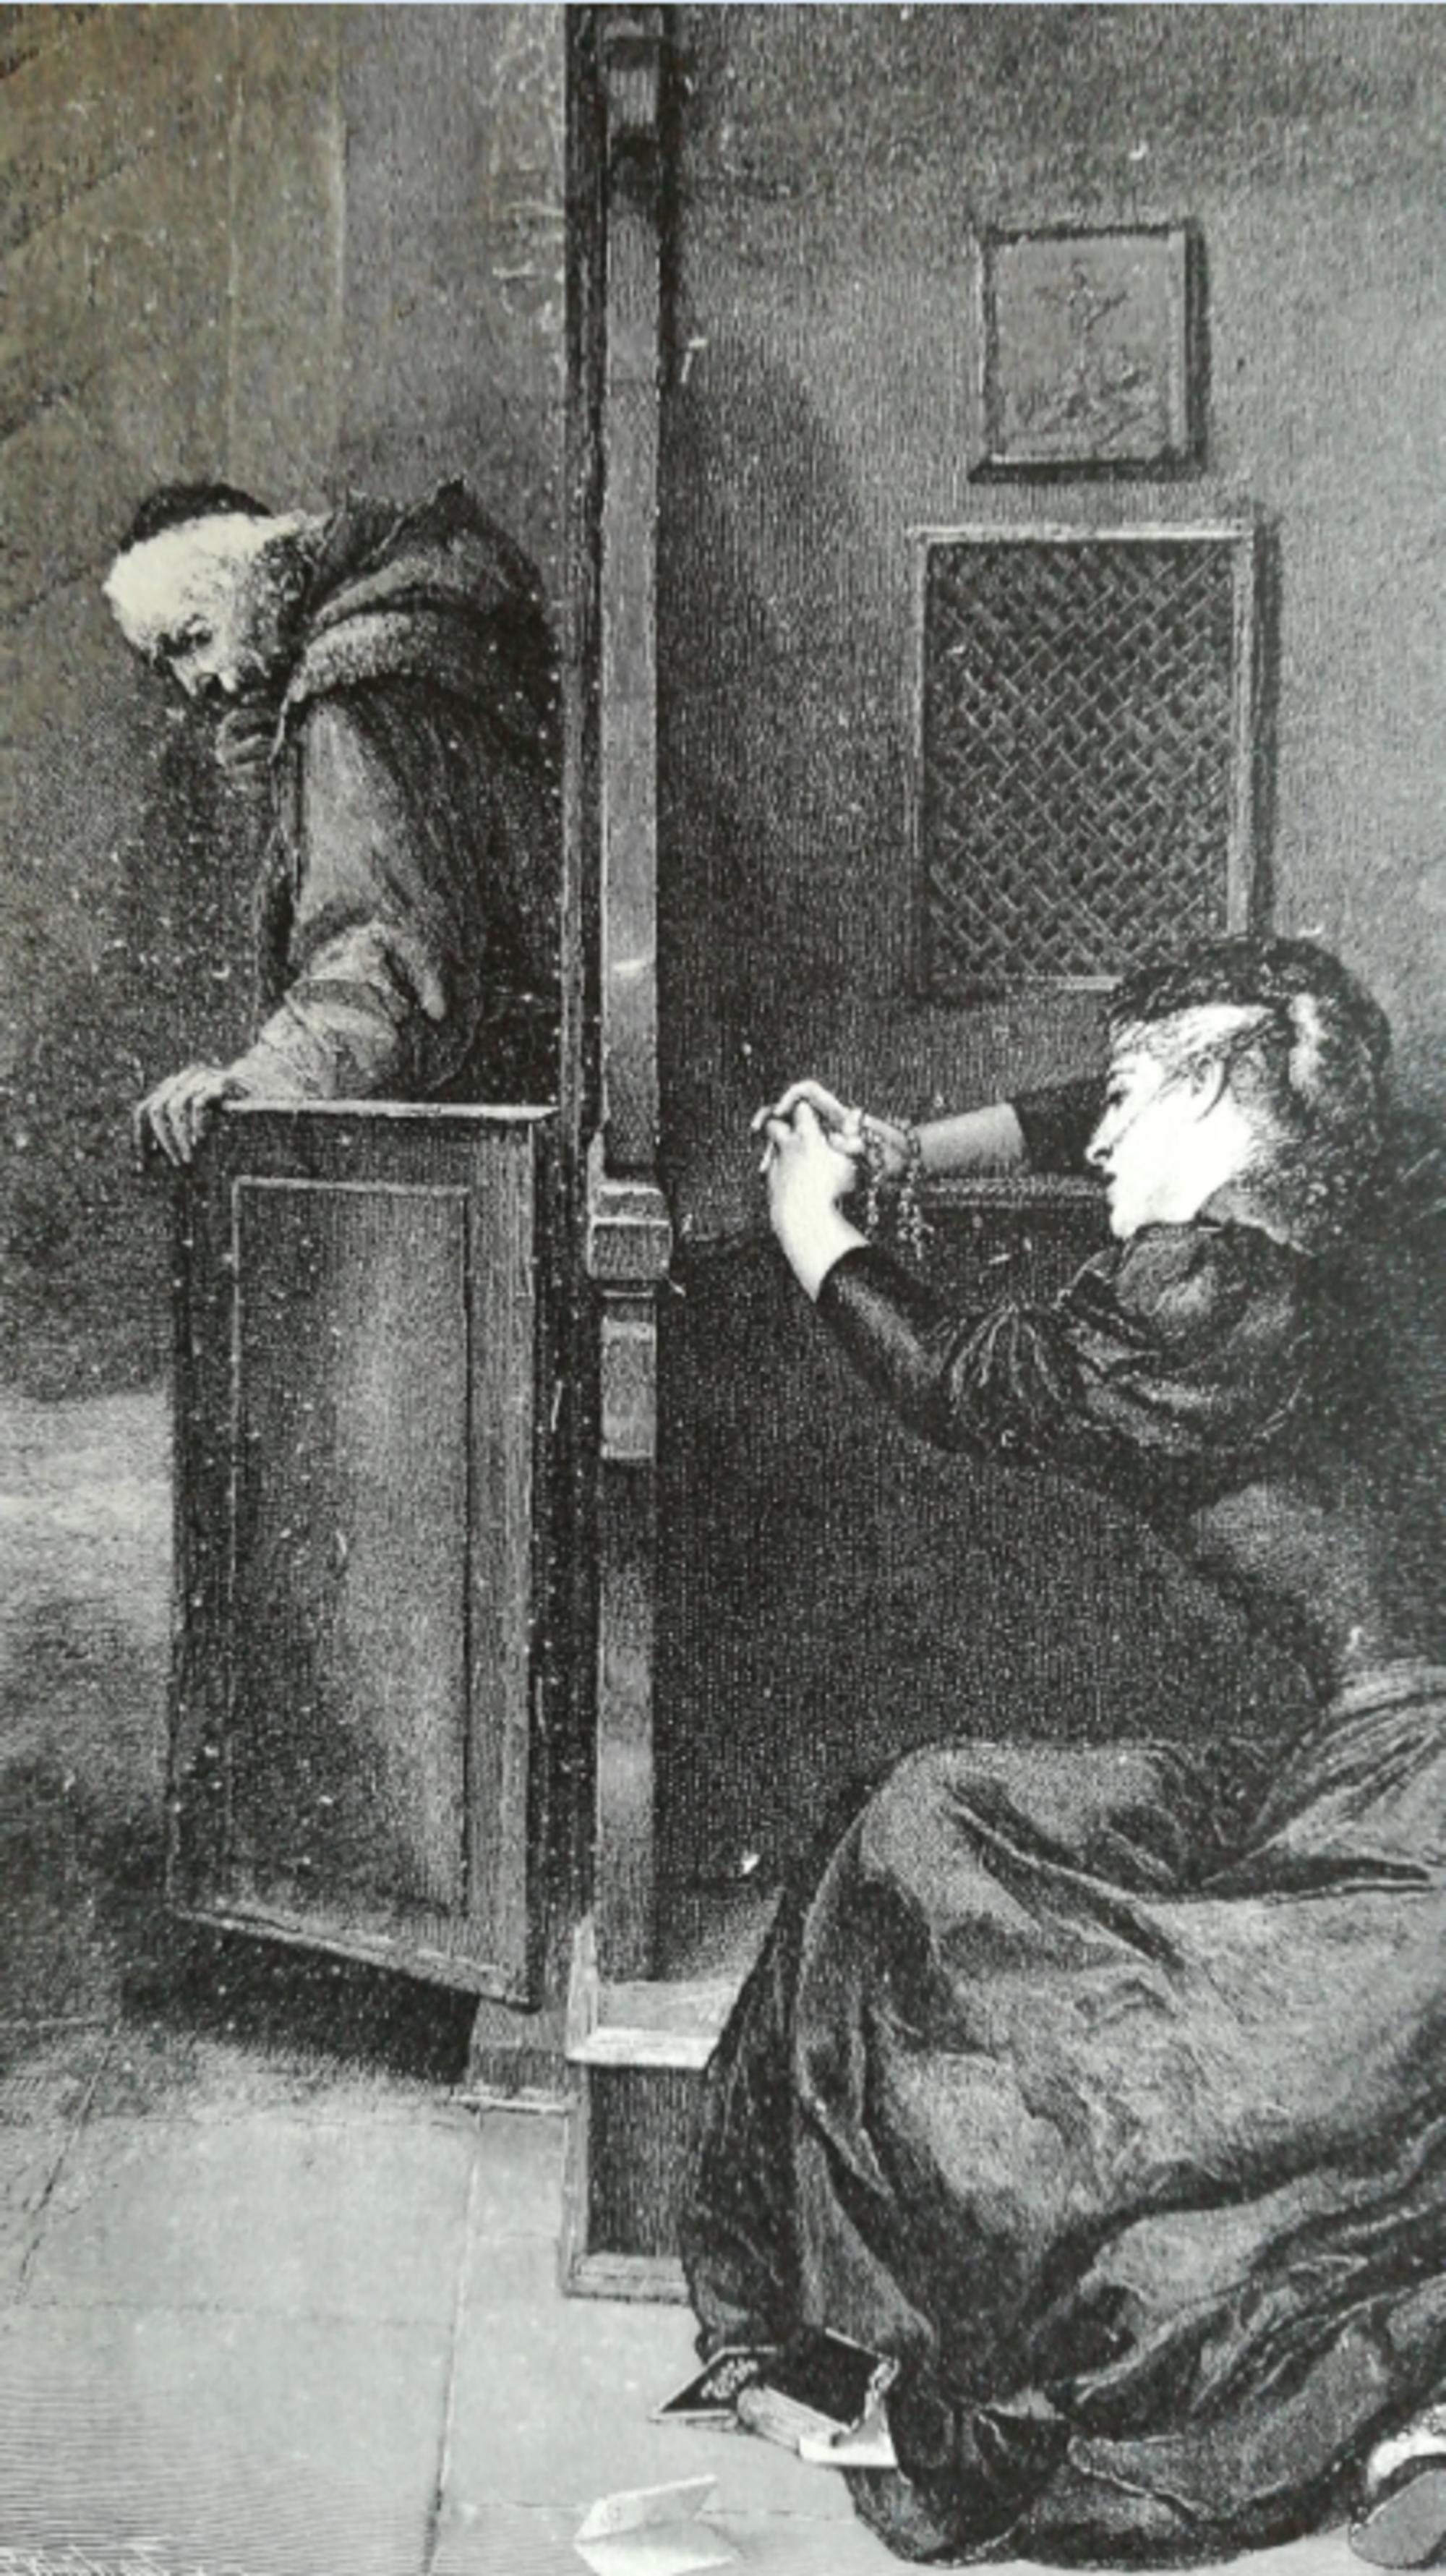 Ilustración sobre la confesión en una publicación anticlerical